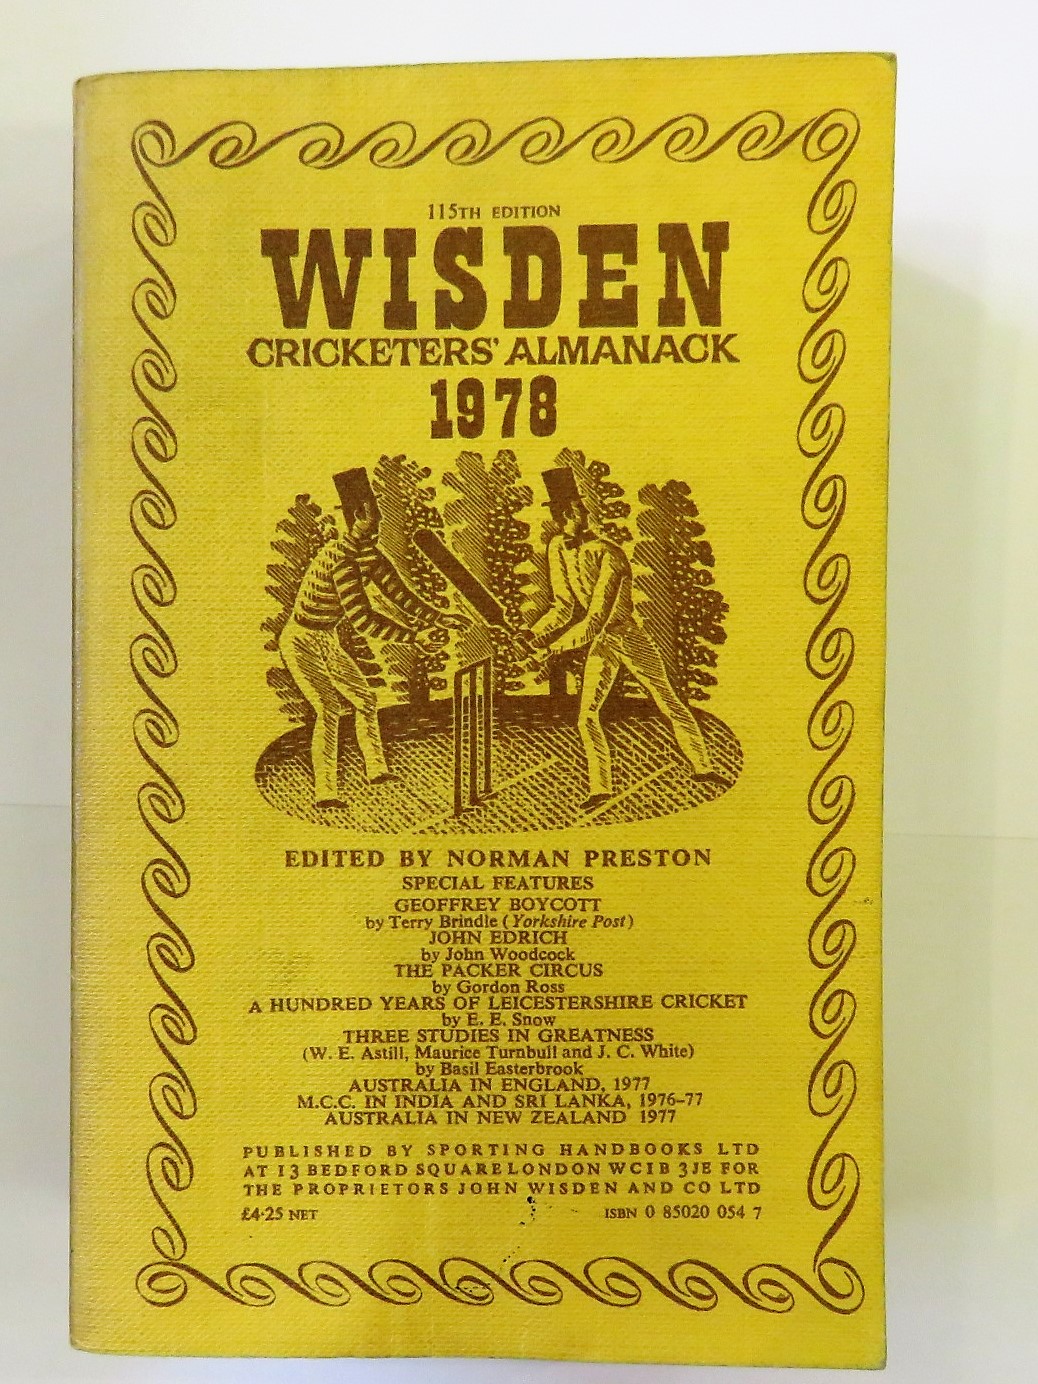 Wisden Cricketers' Almanack 1978